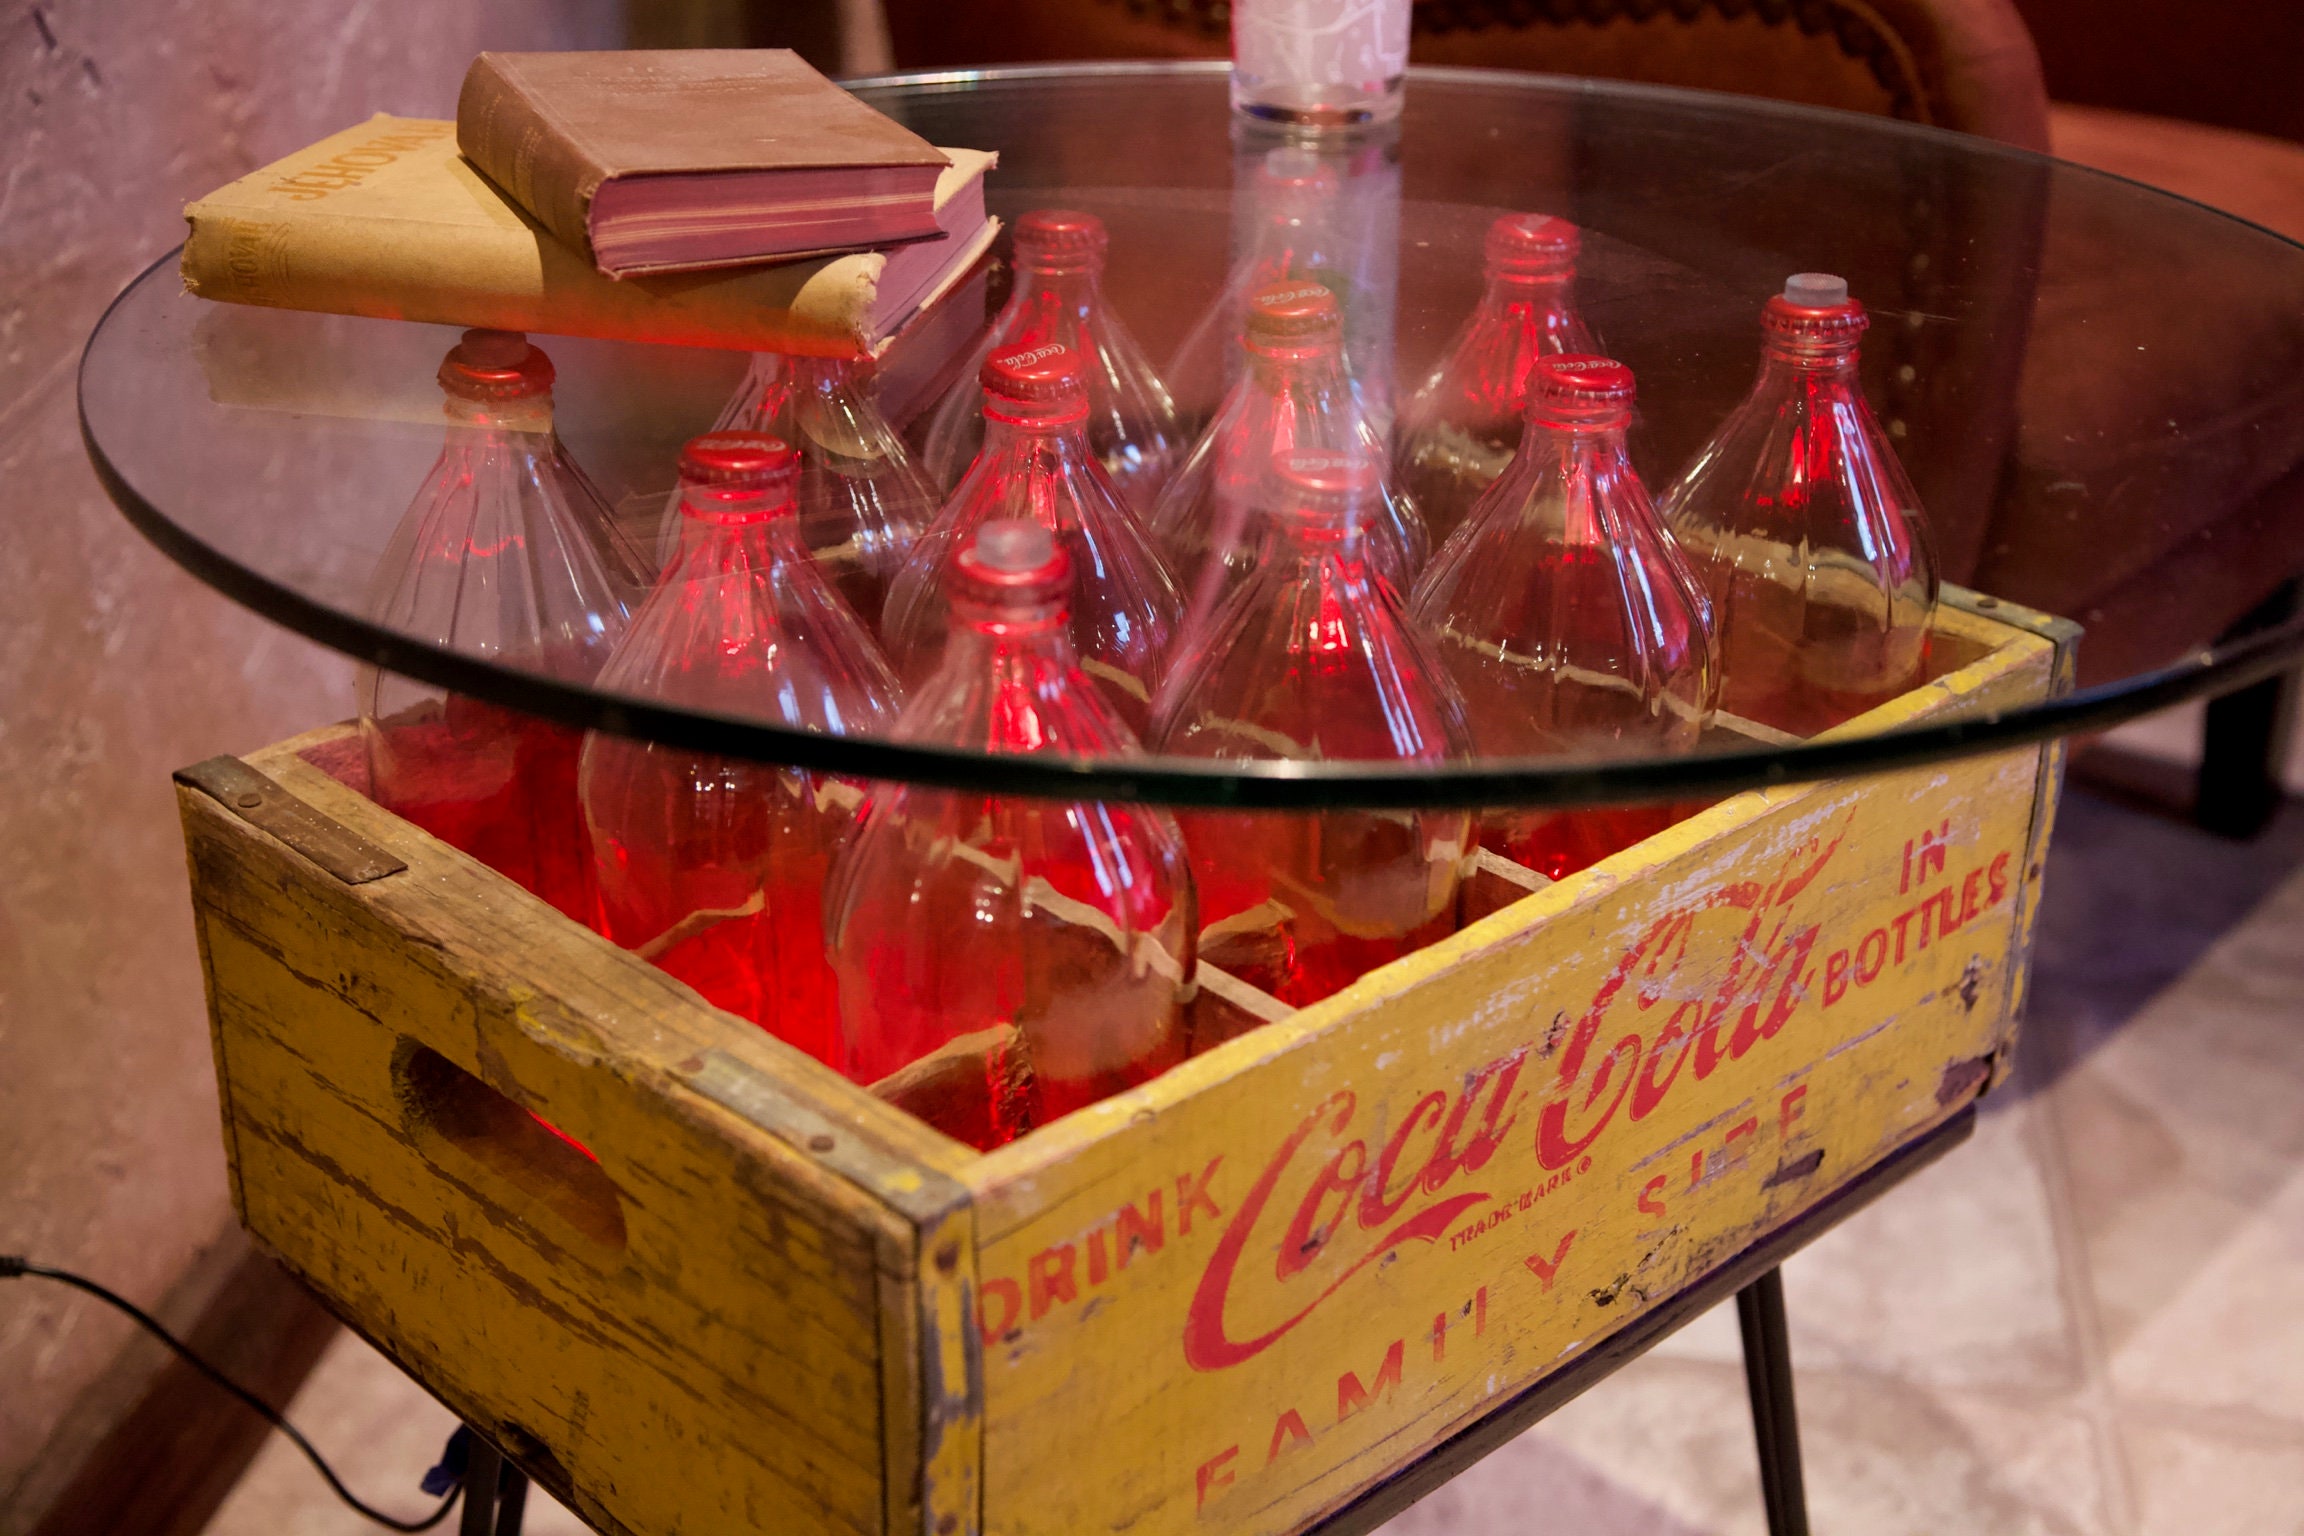 Coca Cola Lamp - Foter  Coca cola decor, Coca cola furniture, Coke bottle  crafts